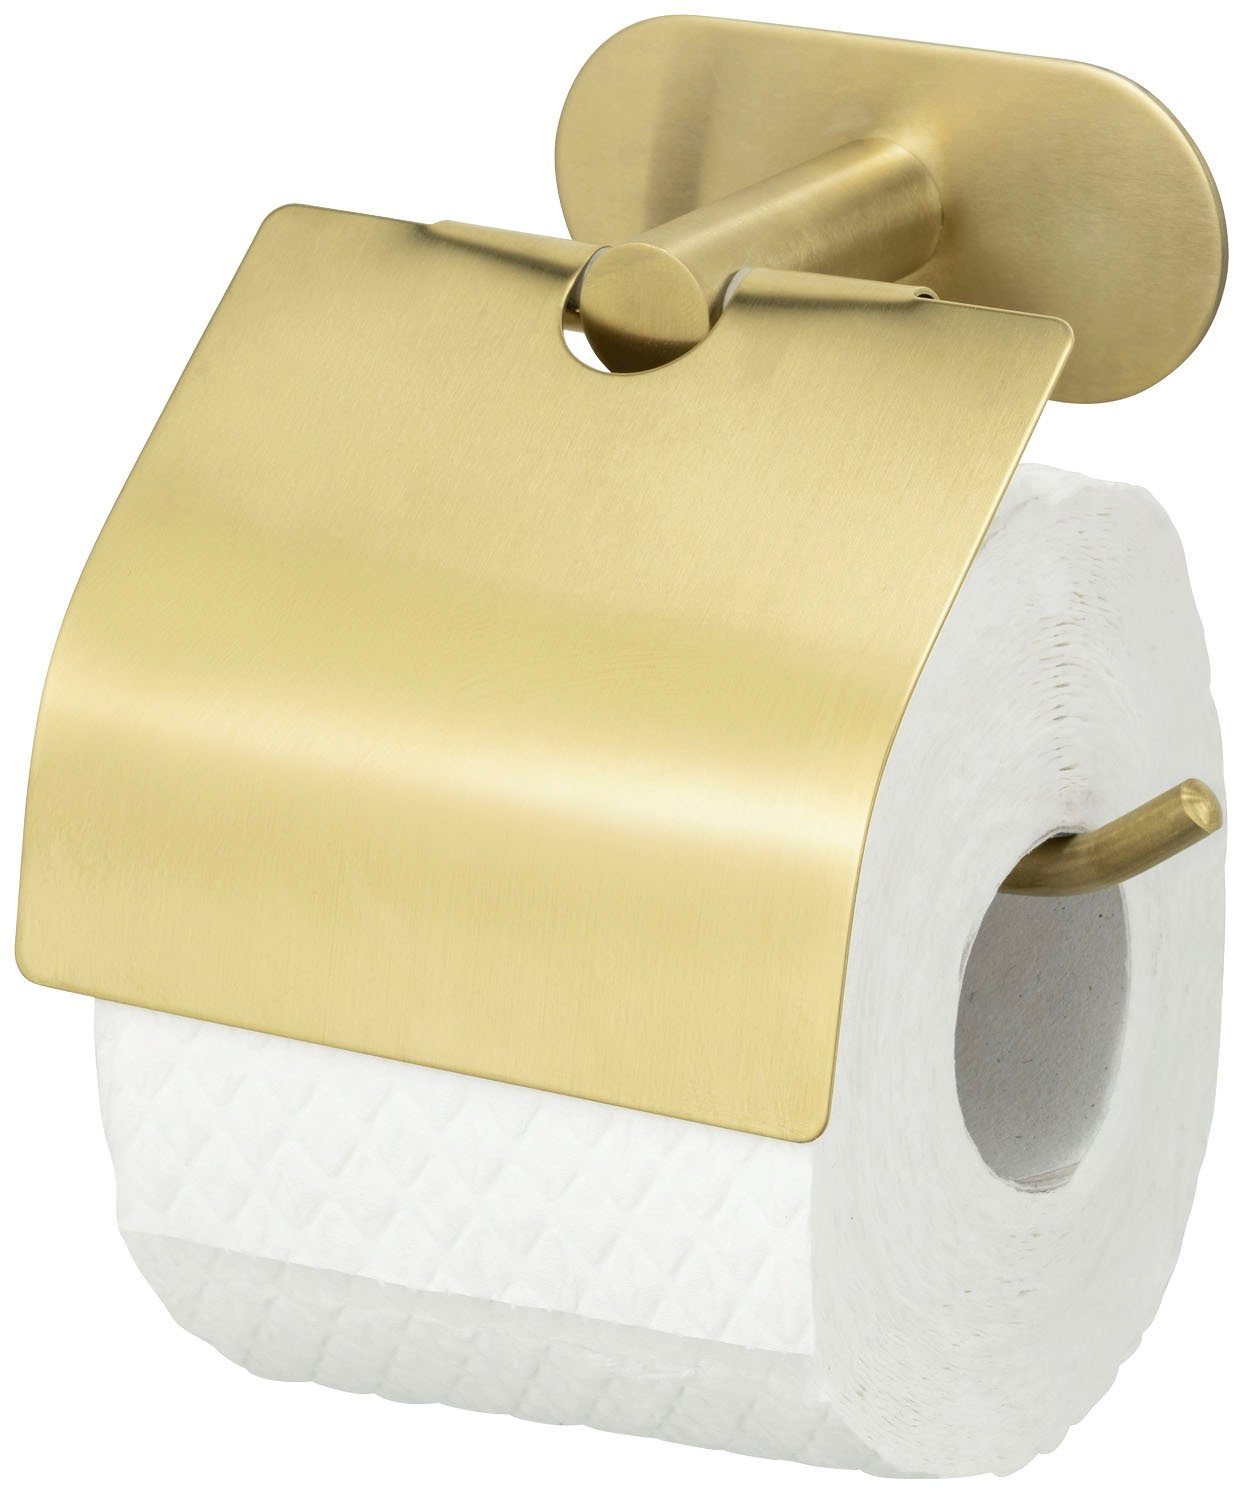 Turbo-Loc®, Toilettenpapierhalter ohne mit Deckel, Bohren WENKO Befestigen